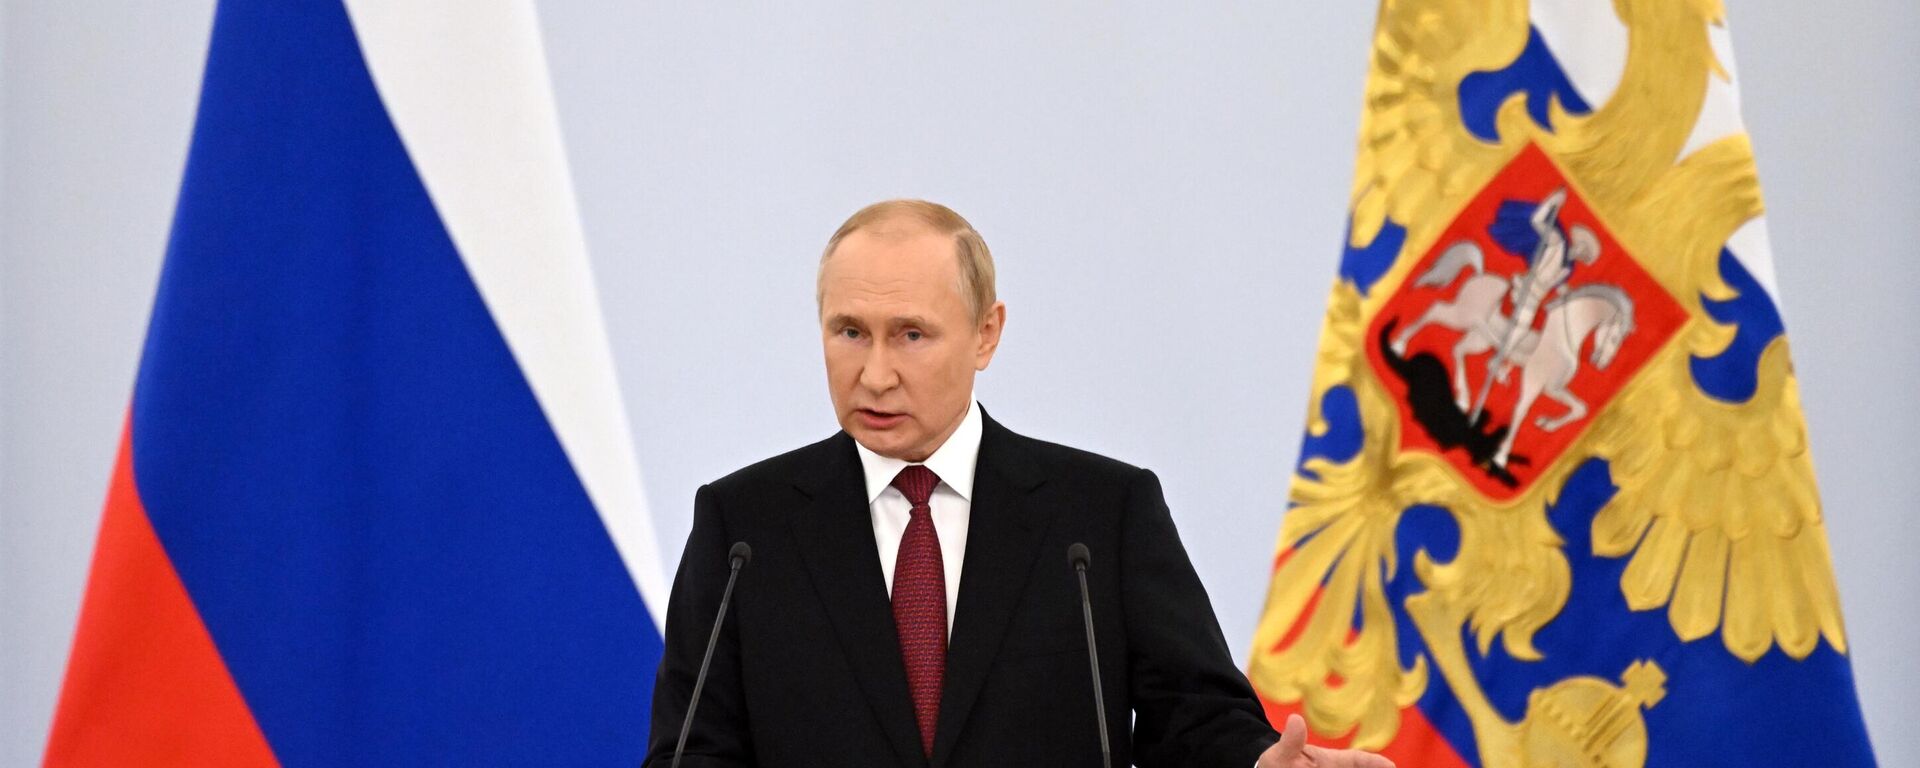 Vladimir Poutine lors de son discours sur sur le rattachement des nouveaux territoires, le 30 septembre 2022 - Sputnik Afrique, 1920, 30.09.2022